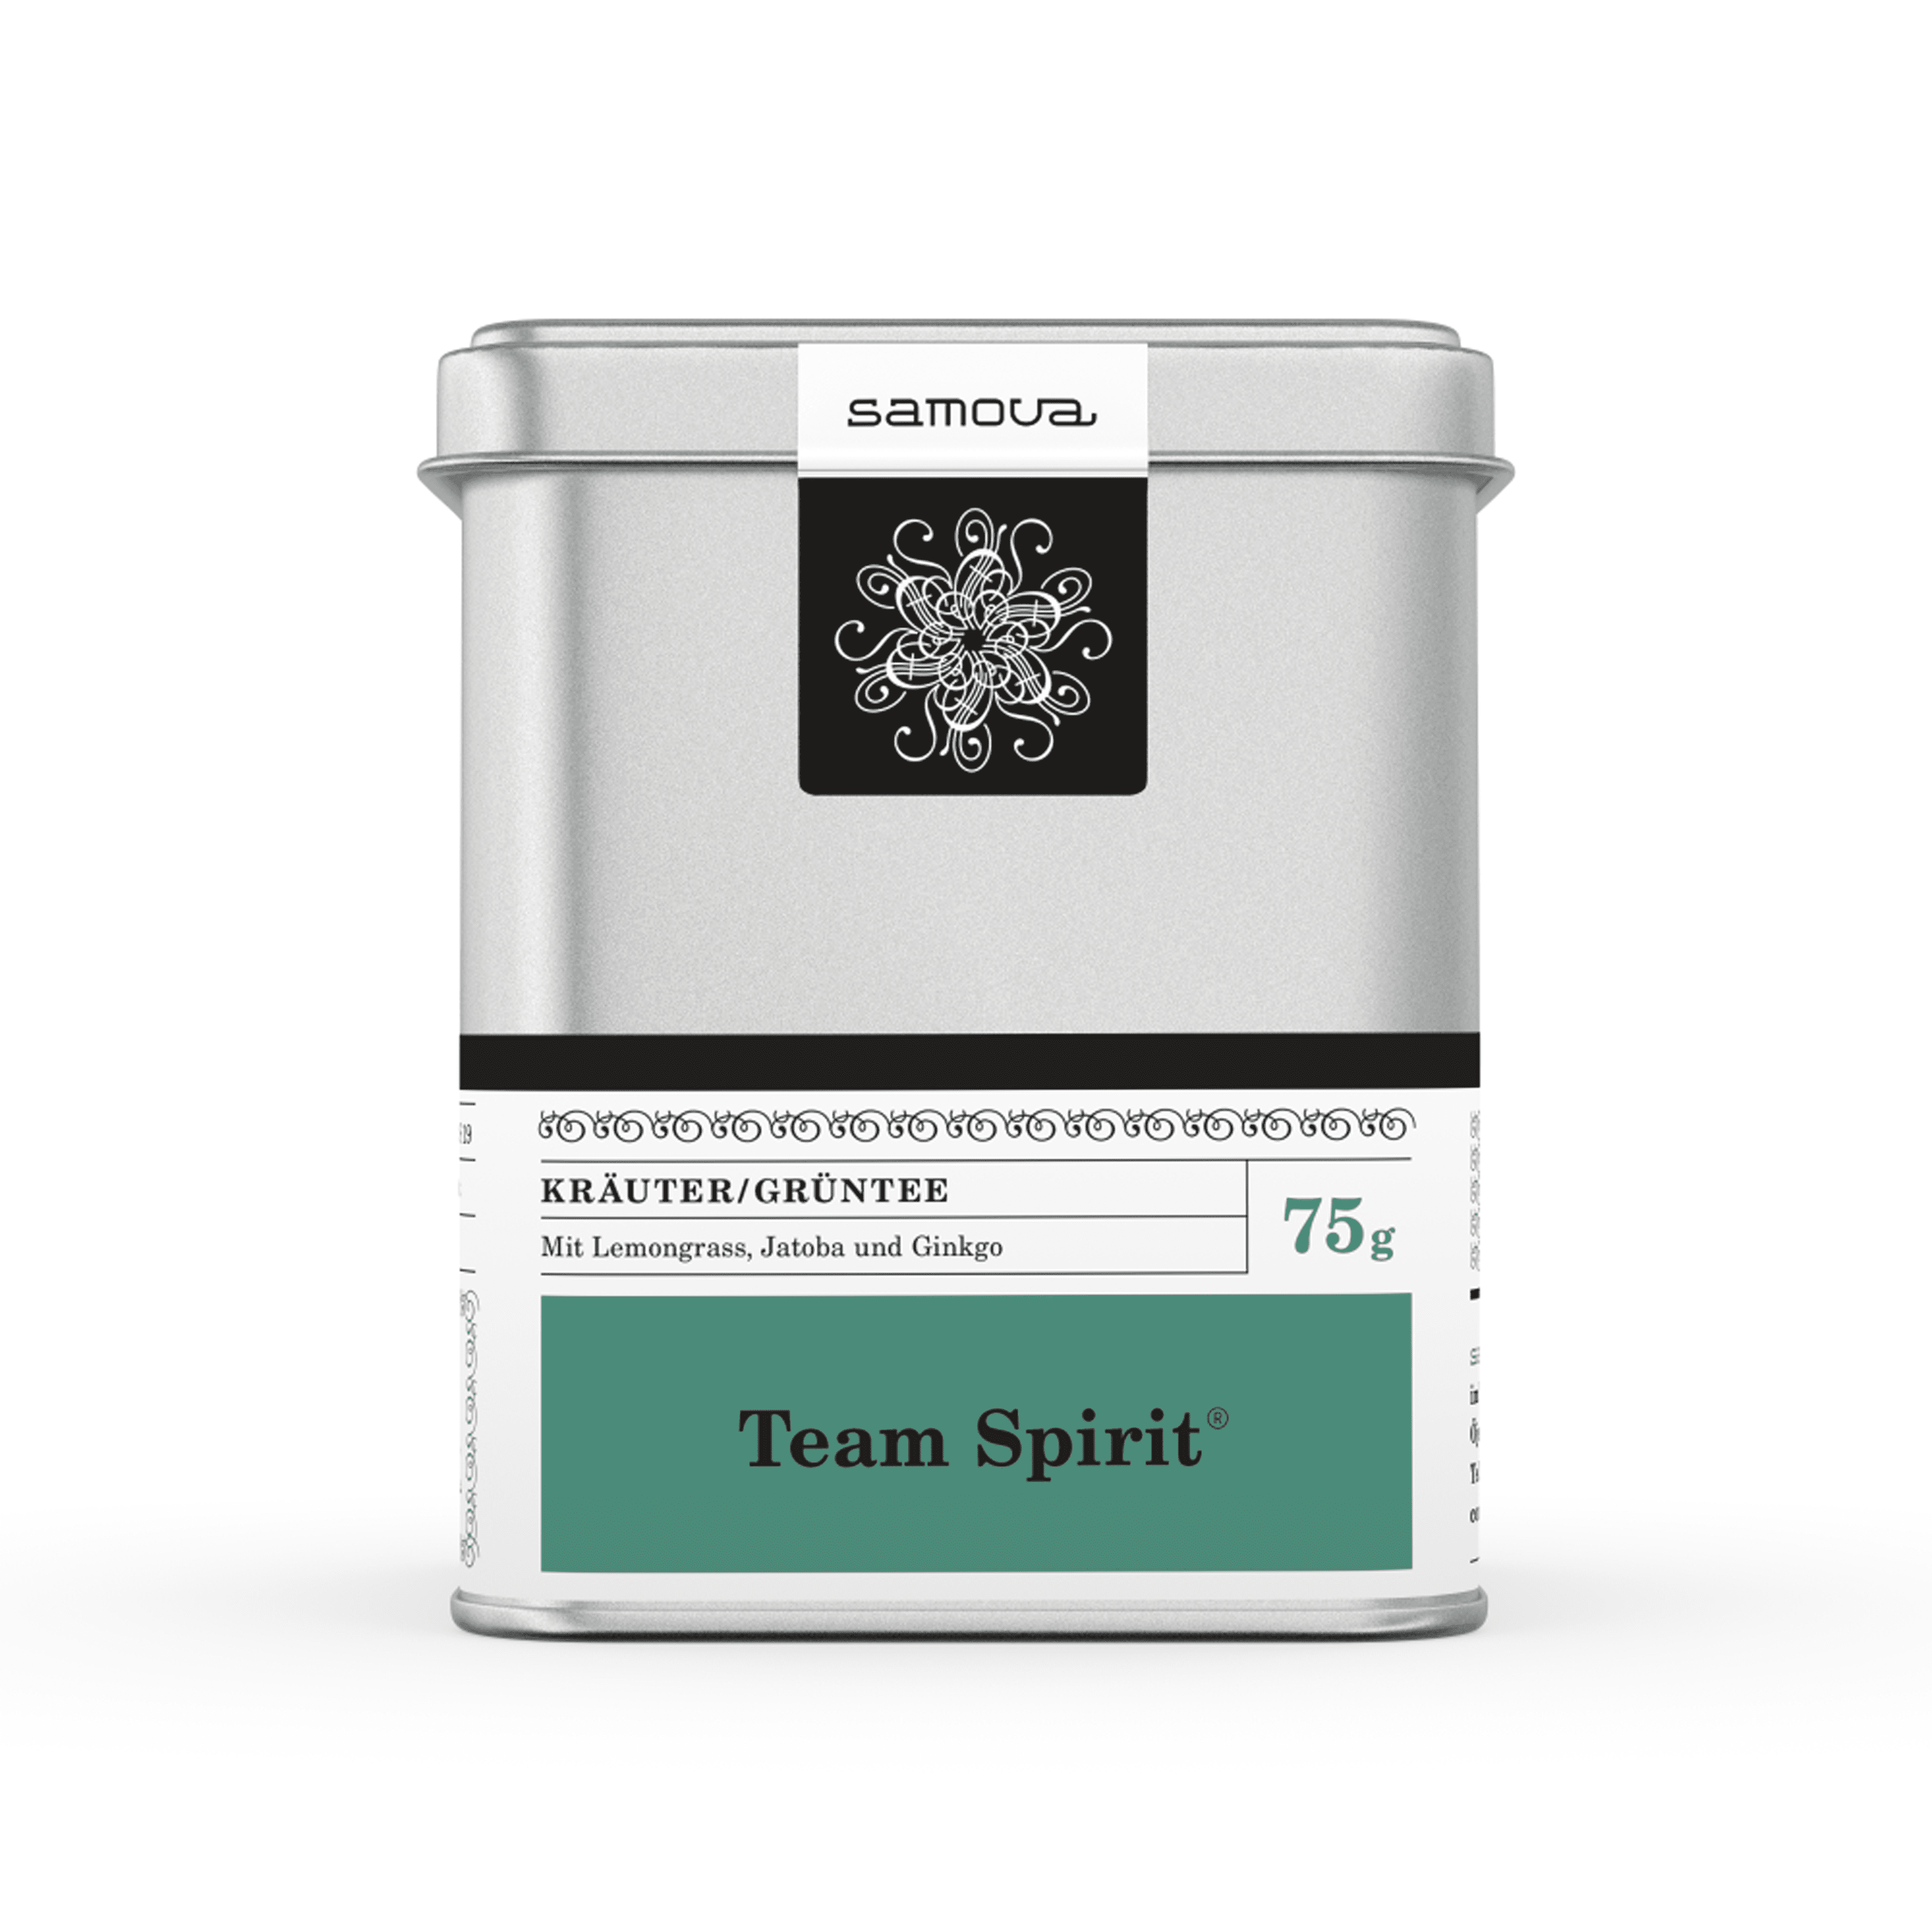 Dåse af Team Spirit te